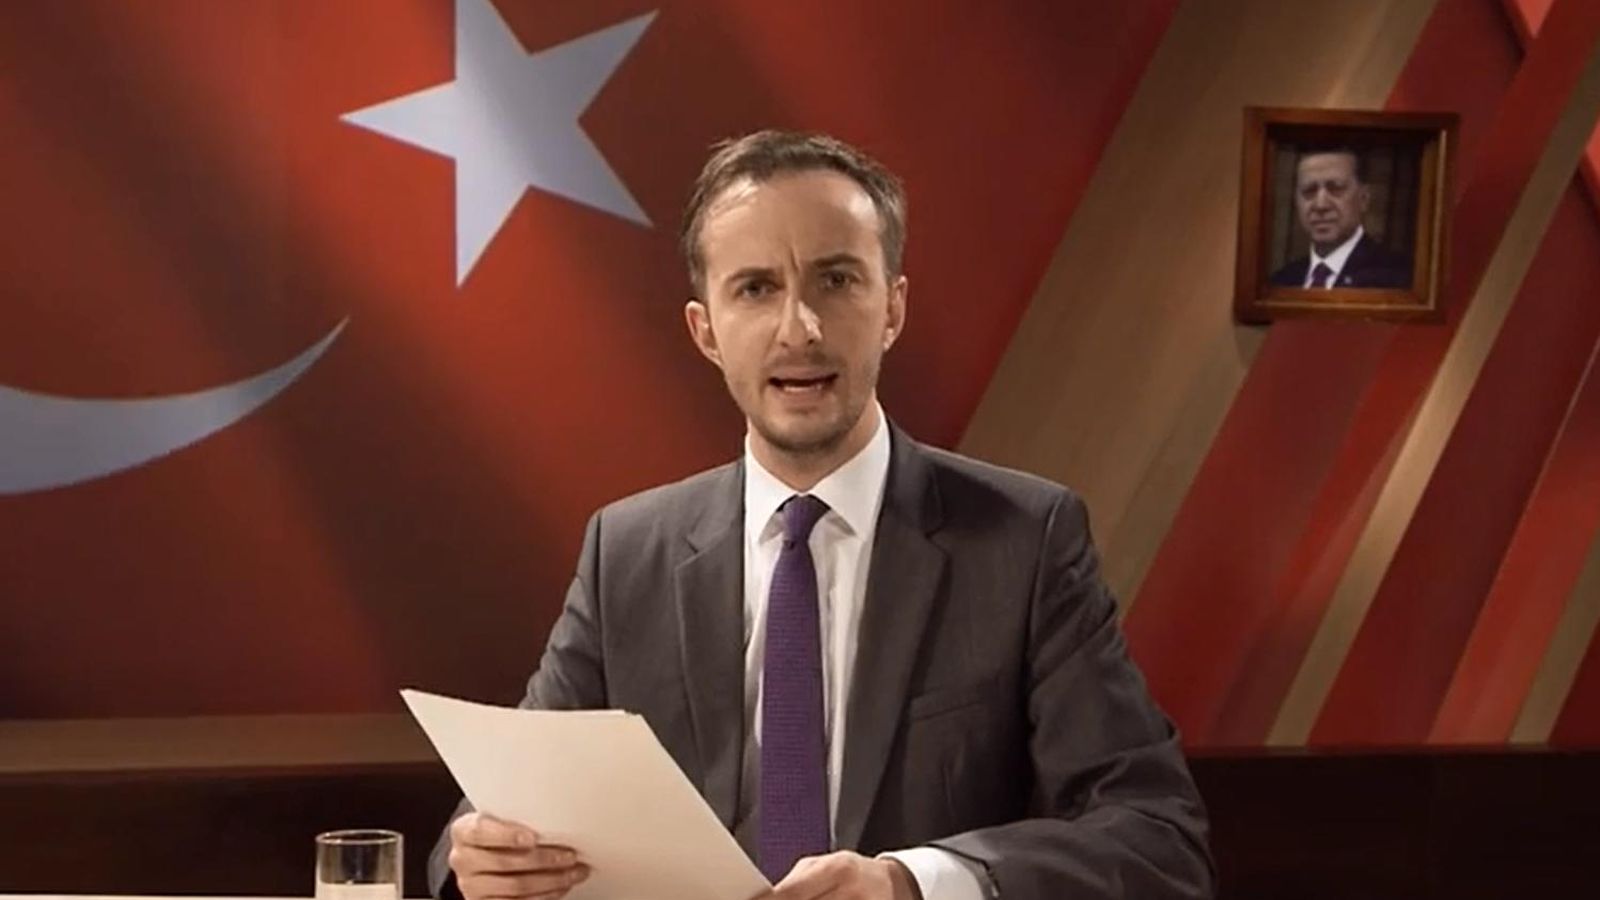 Foto: Captura de pantalla del vídeo en el que Jan Böhmermann lee su poema satírico